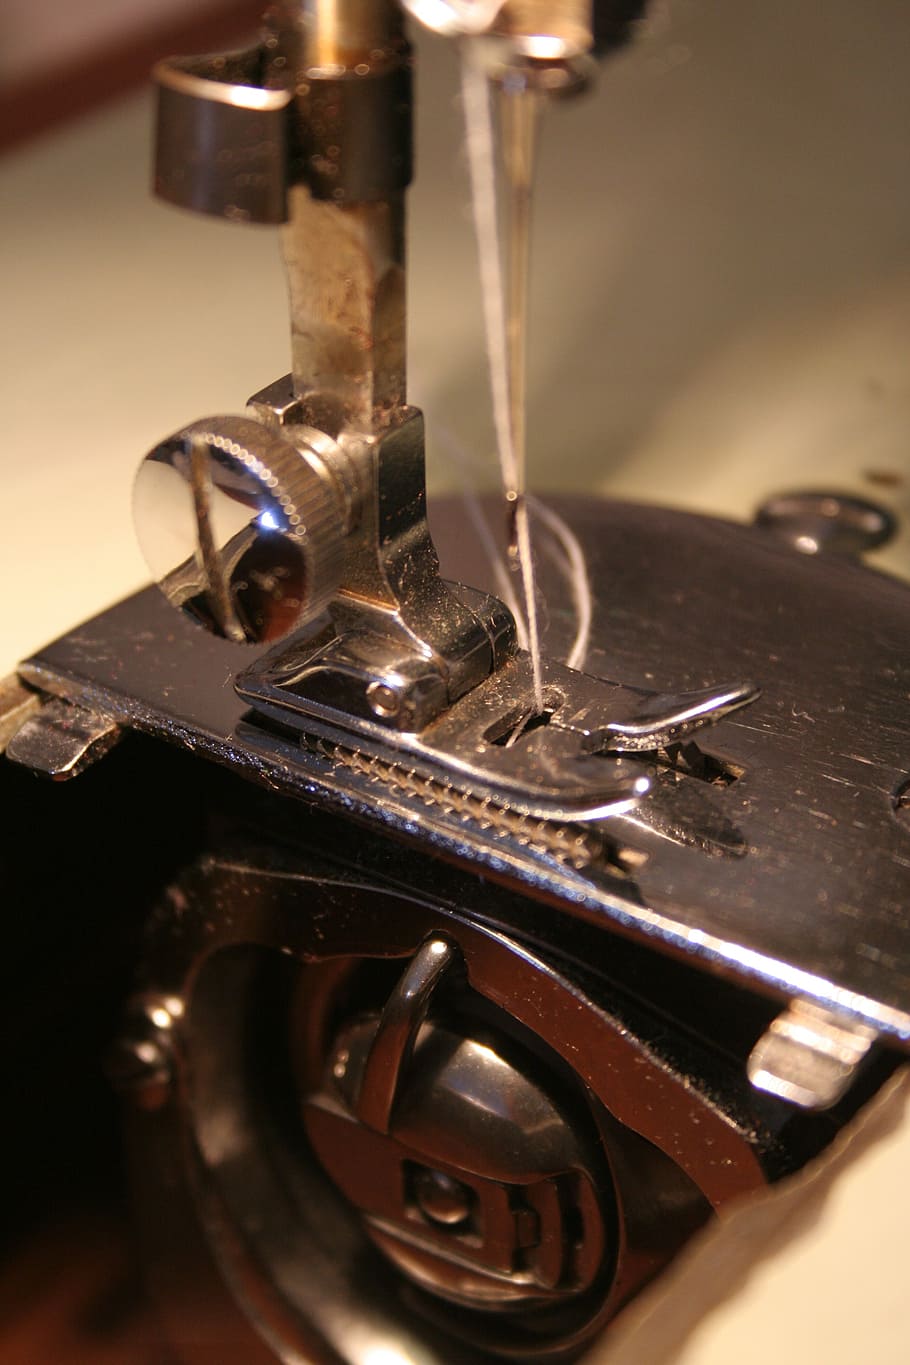 preto, pedal, máquina de costura, costura, ponto fixo, caixa da bobina, bobina, agulha, calcador, pé